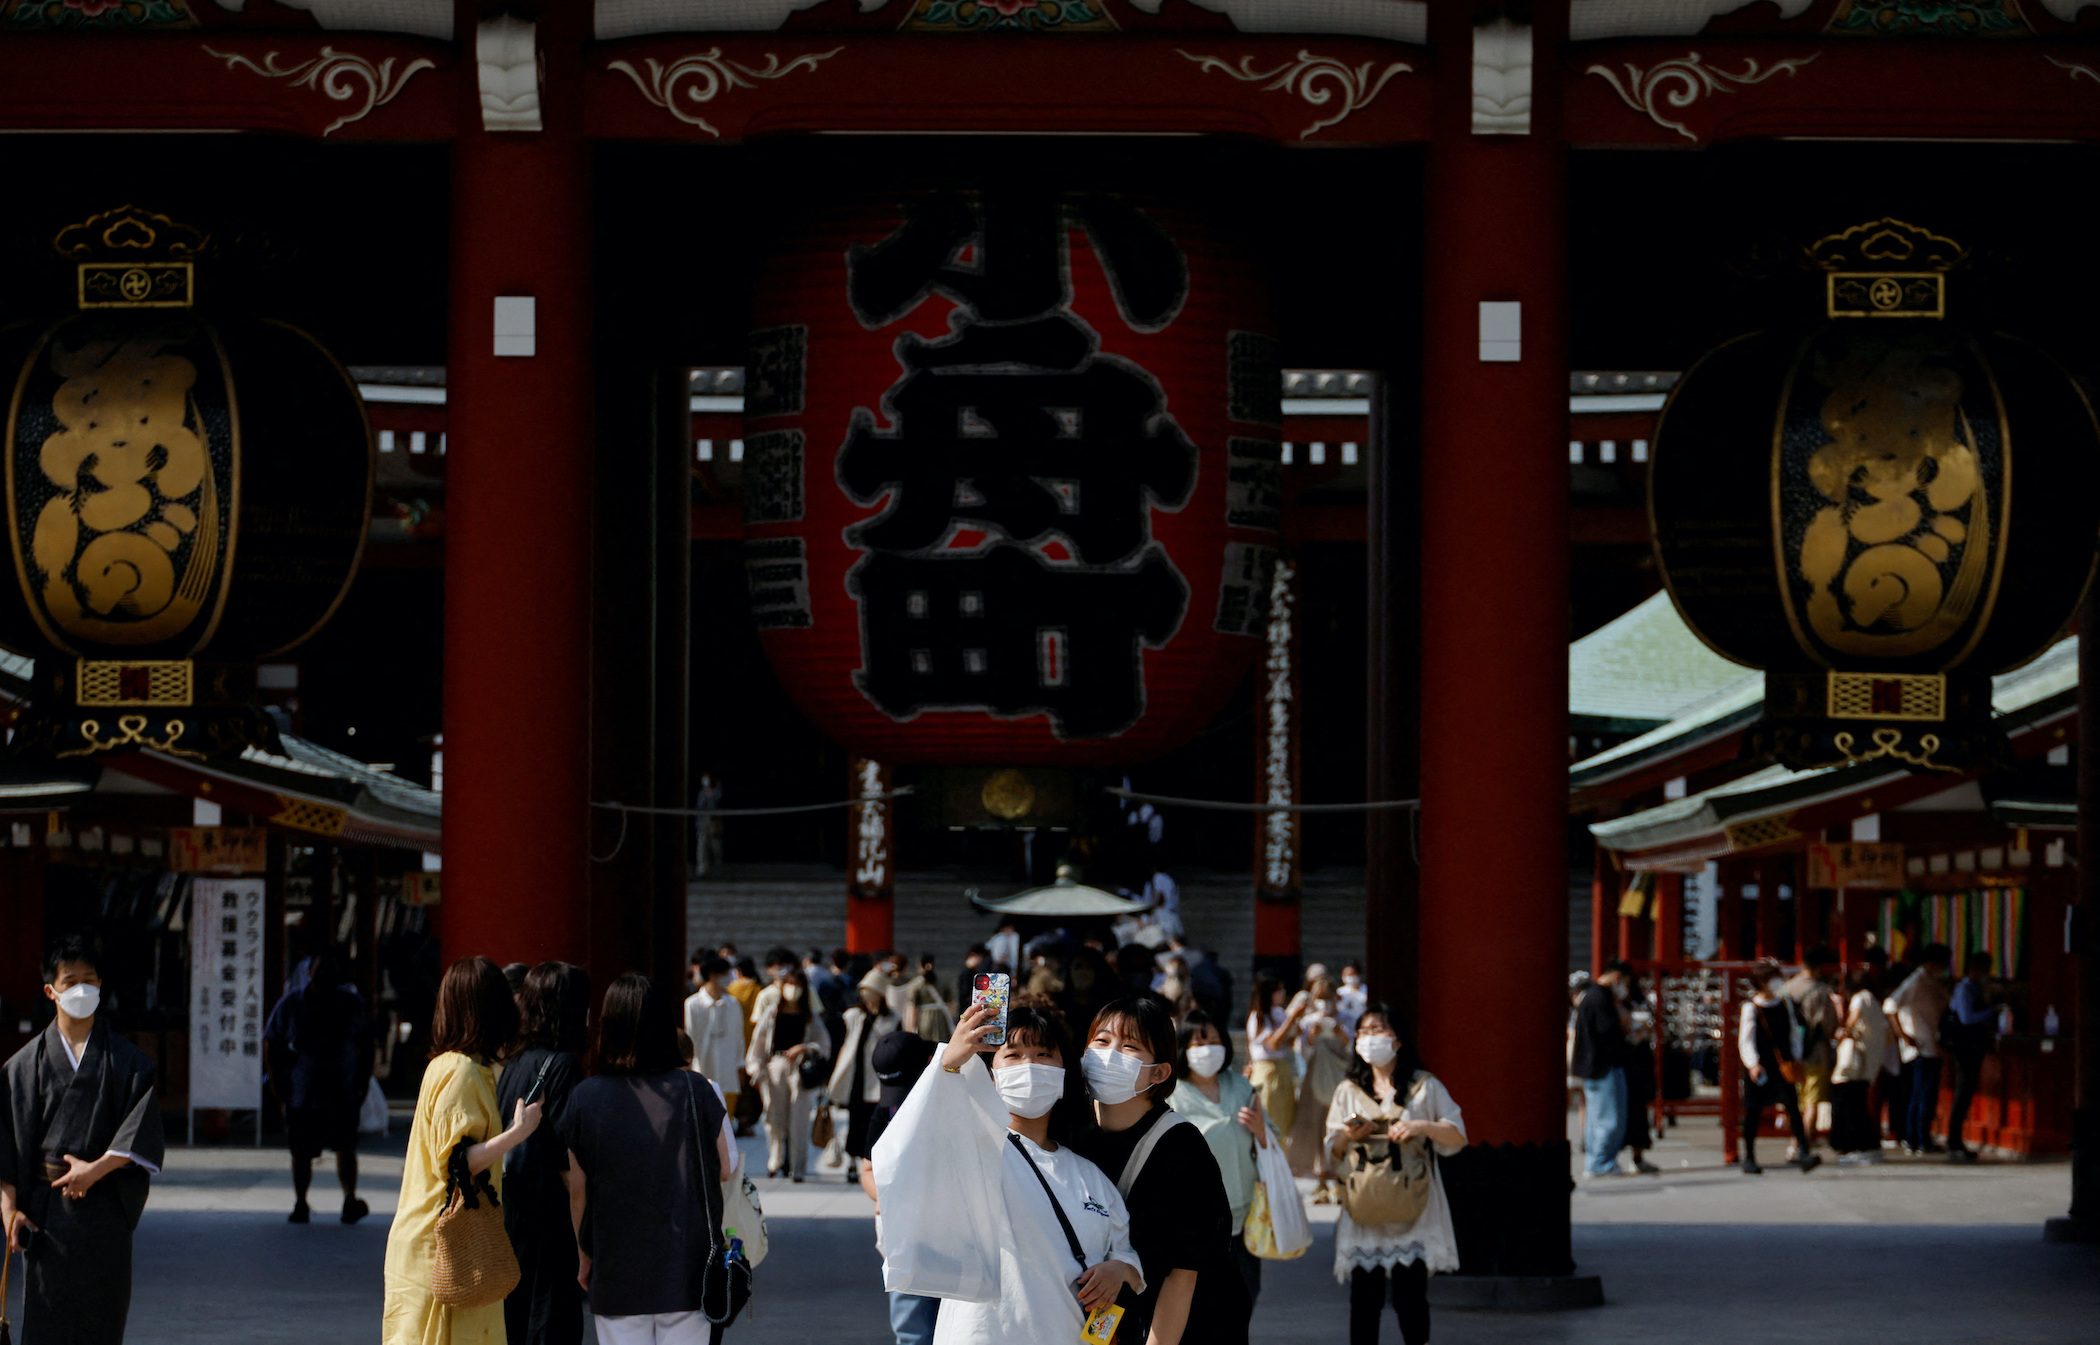 japan tourism reopening news